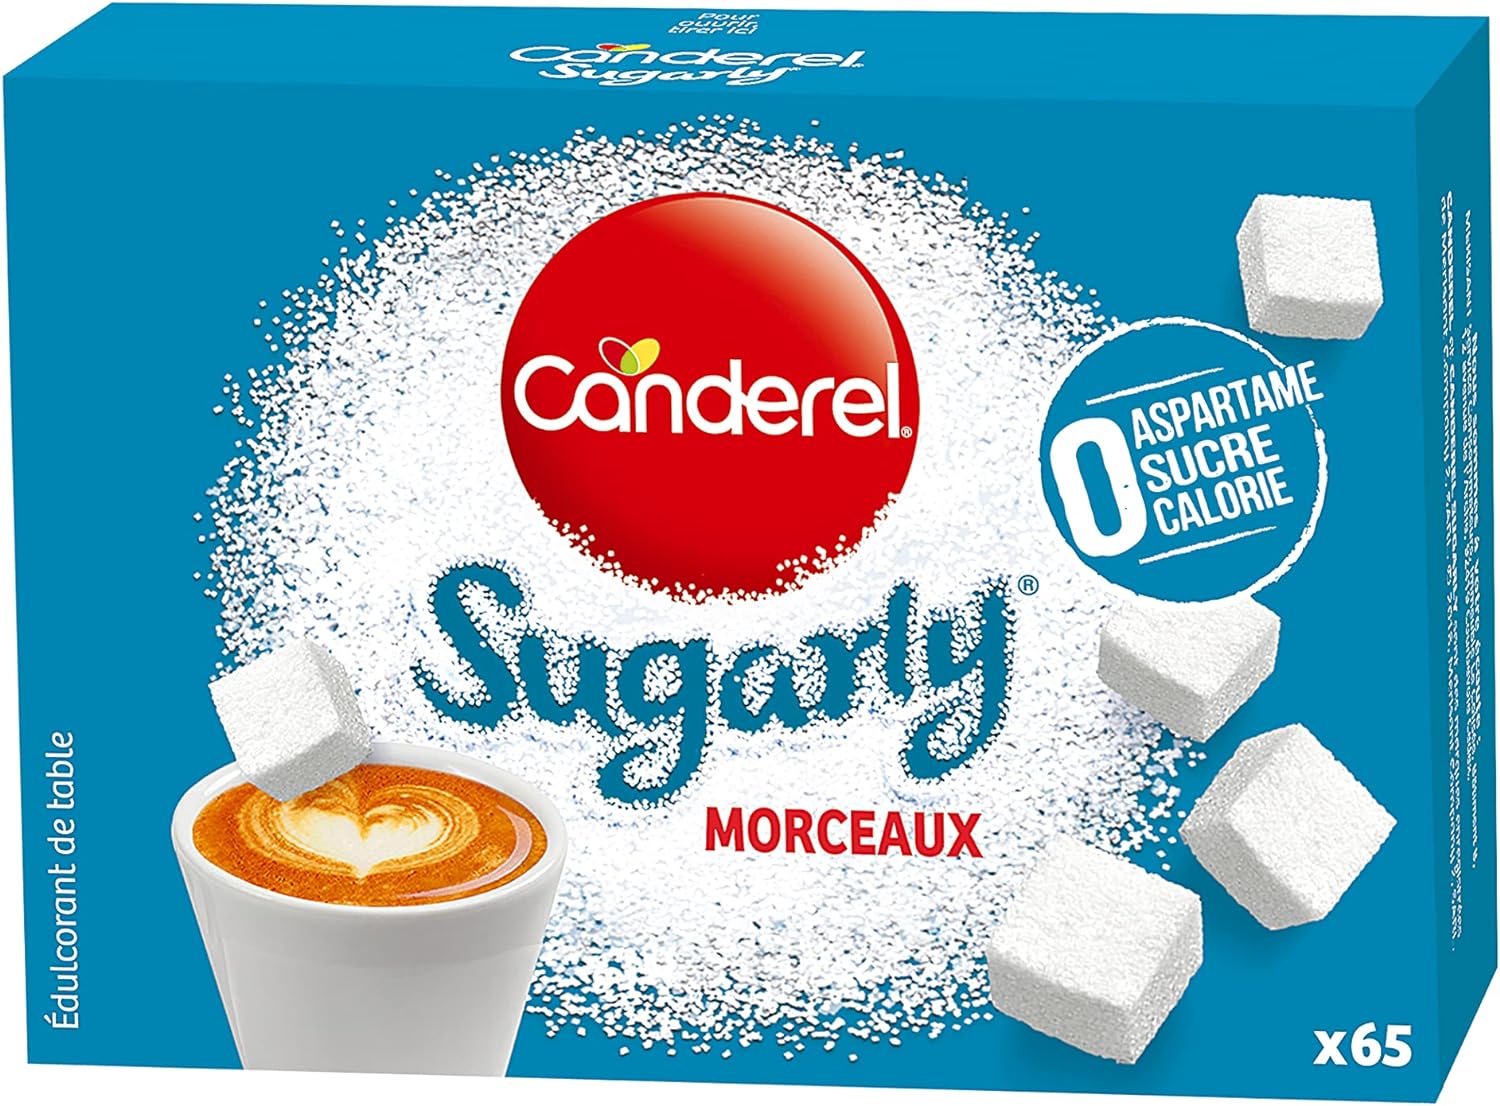 **"Canderel Sugarly : Édulcorant sans calorie, 65 morceaux de poudre pour sucrer vos boissons chaudes"**